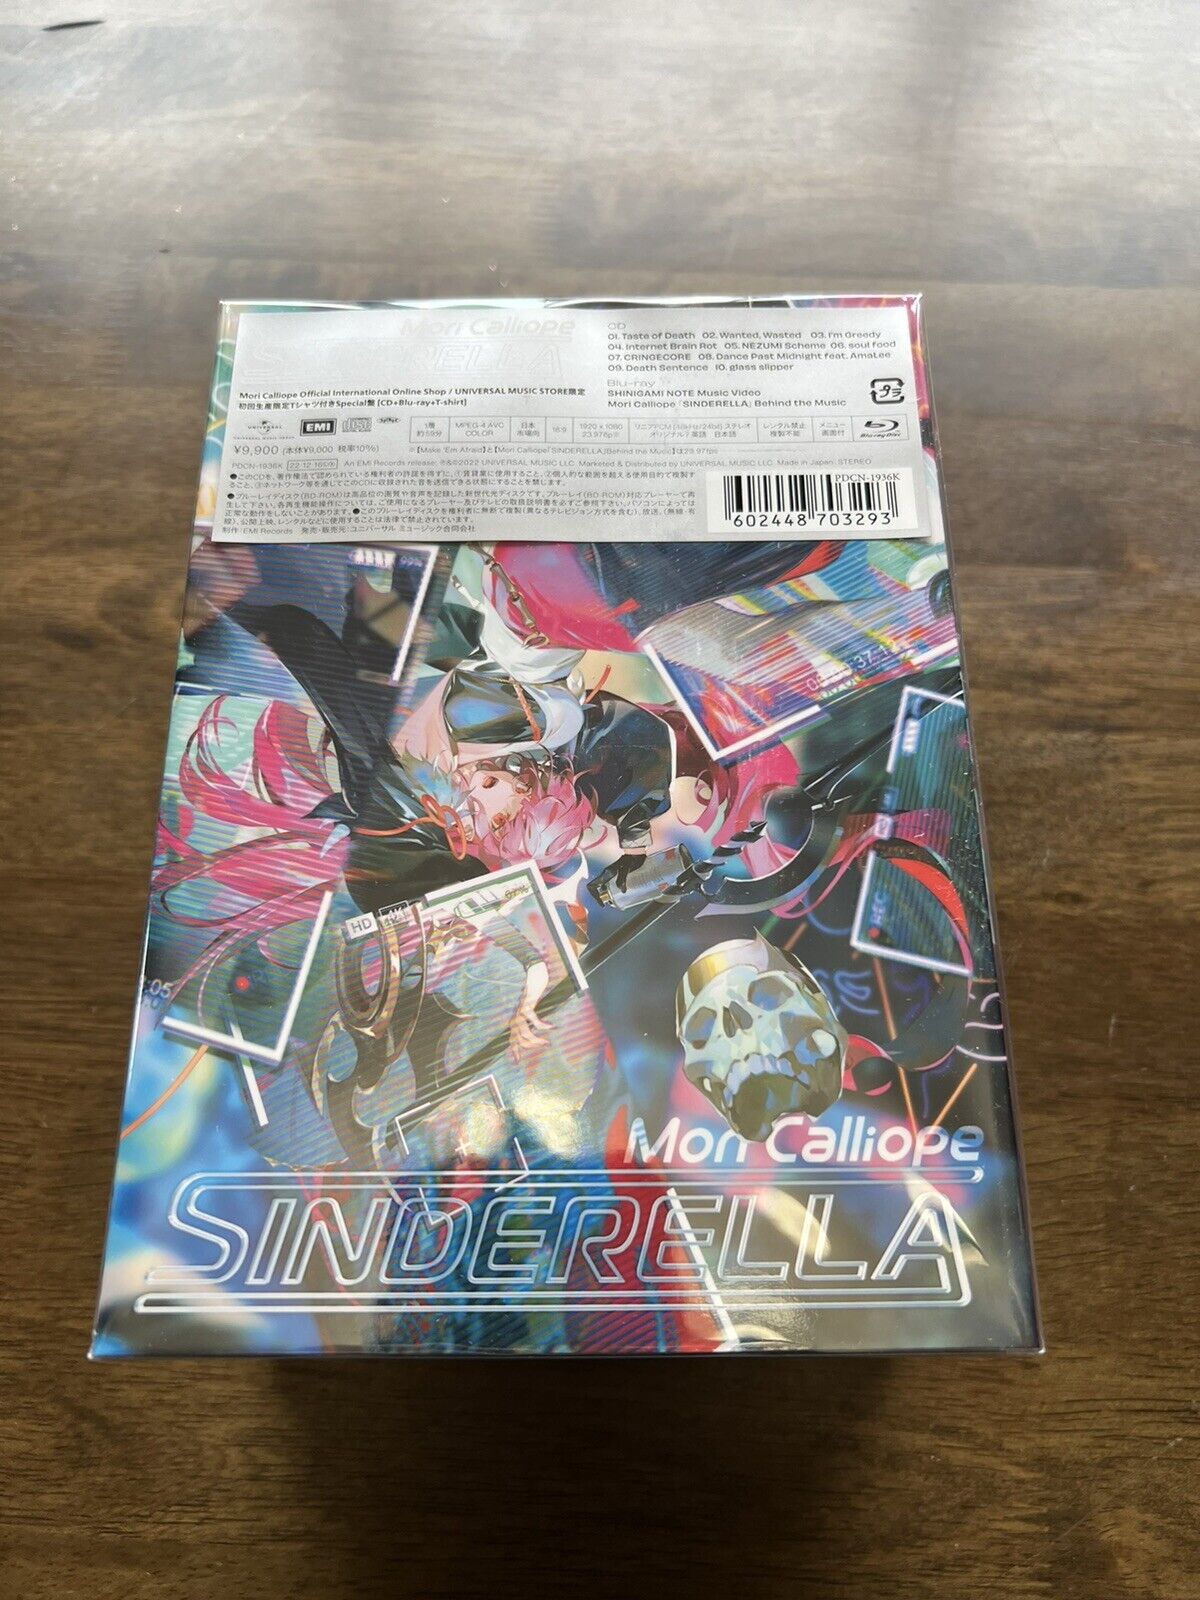 Mori Calliope Sinderella Limited Special Edition - CD Box Set